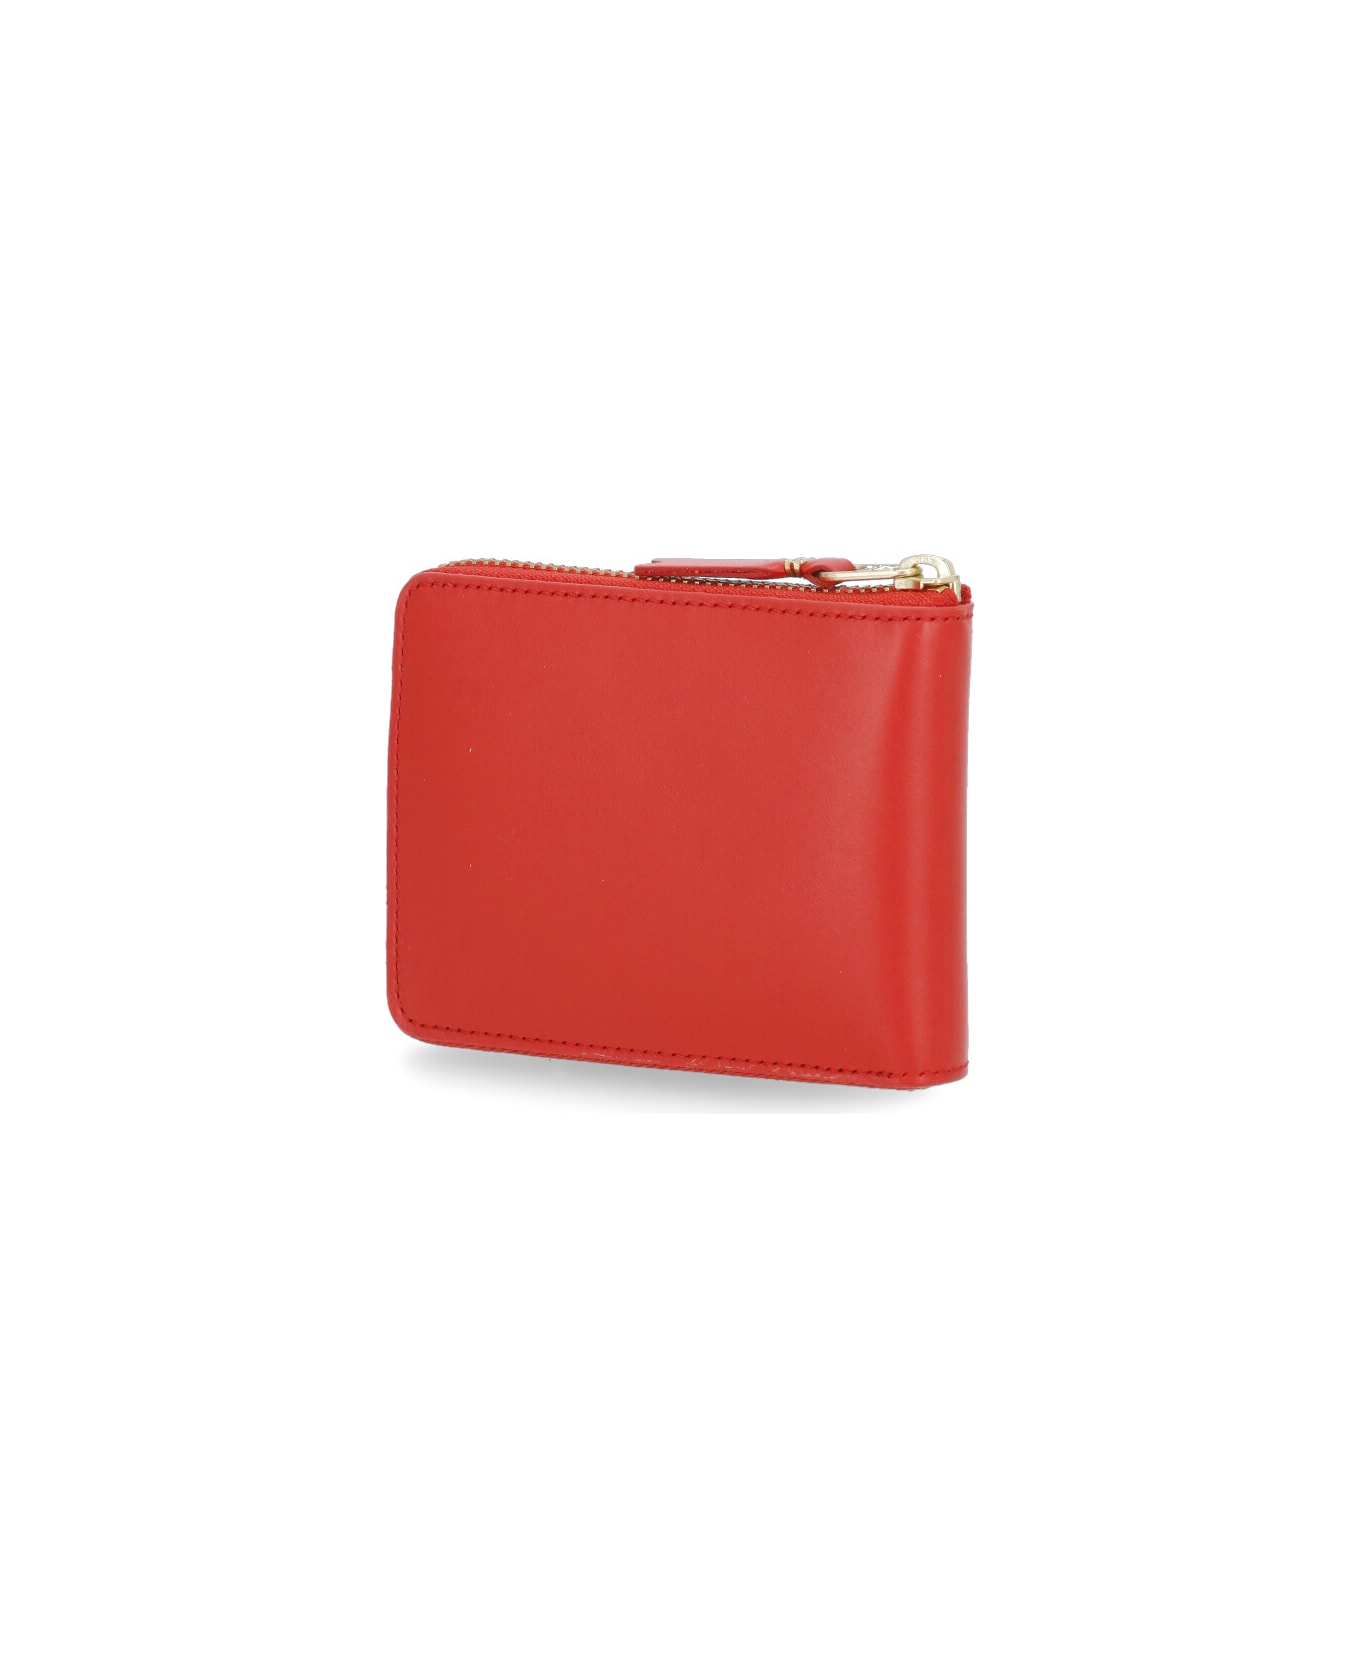 Comme des Garçons Wallet Leather Wallet - Red 財布